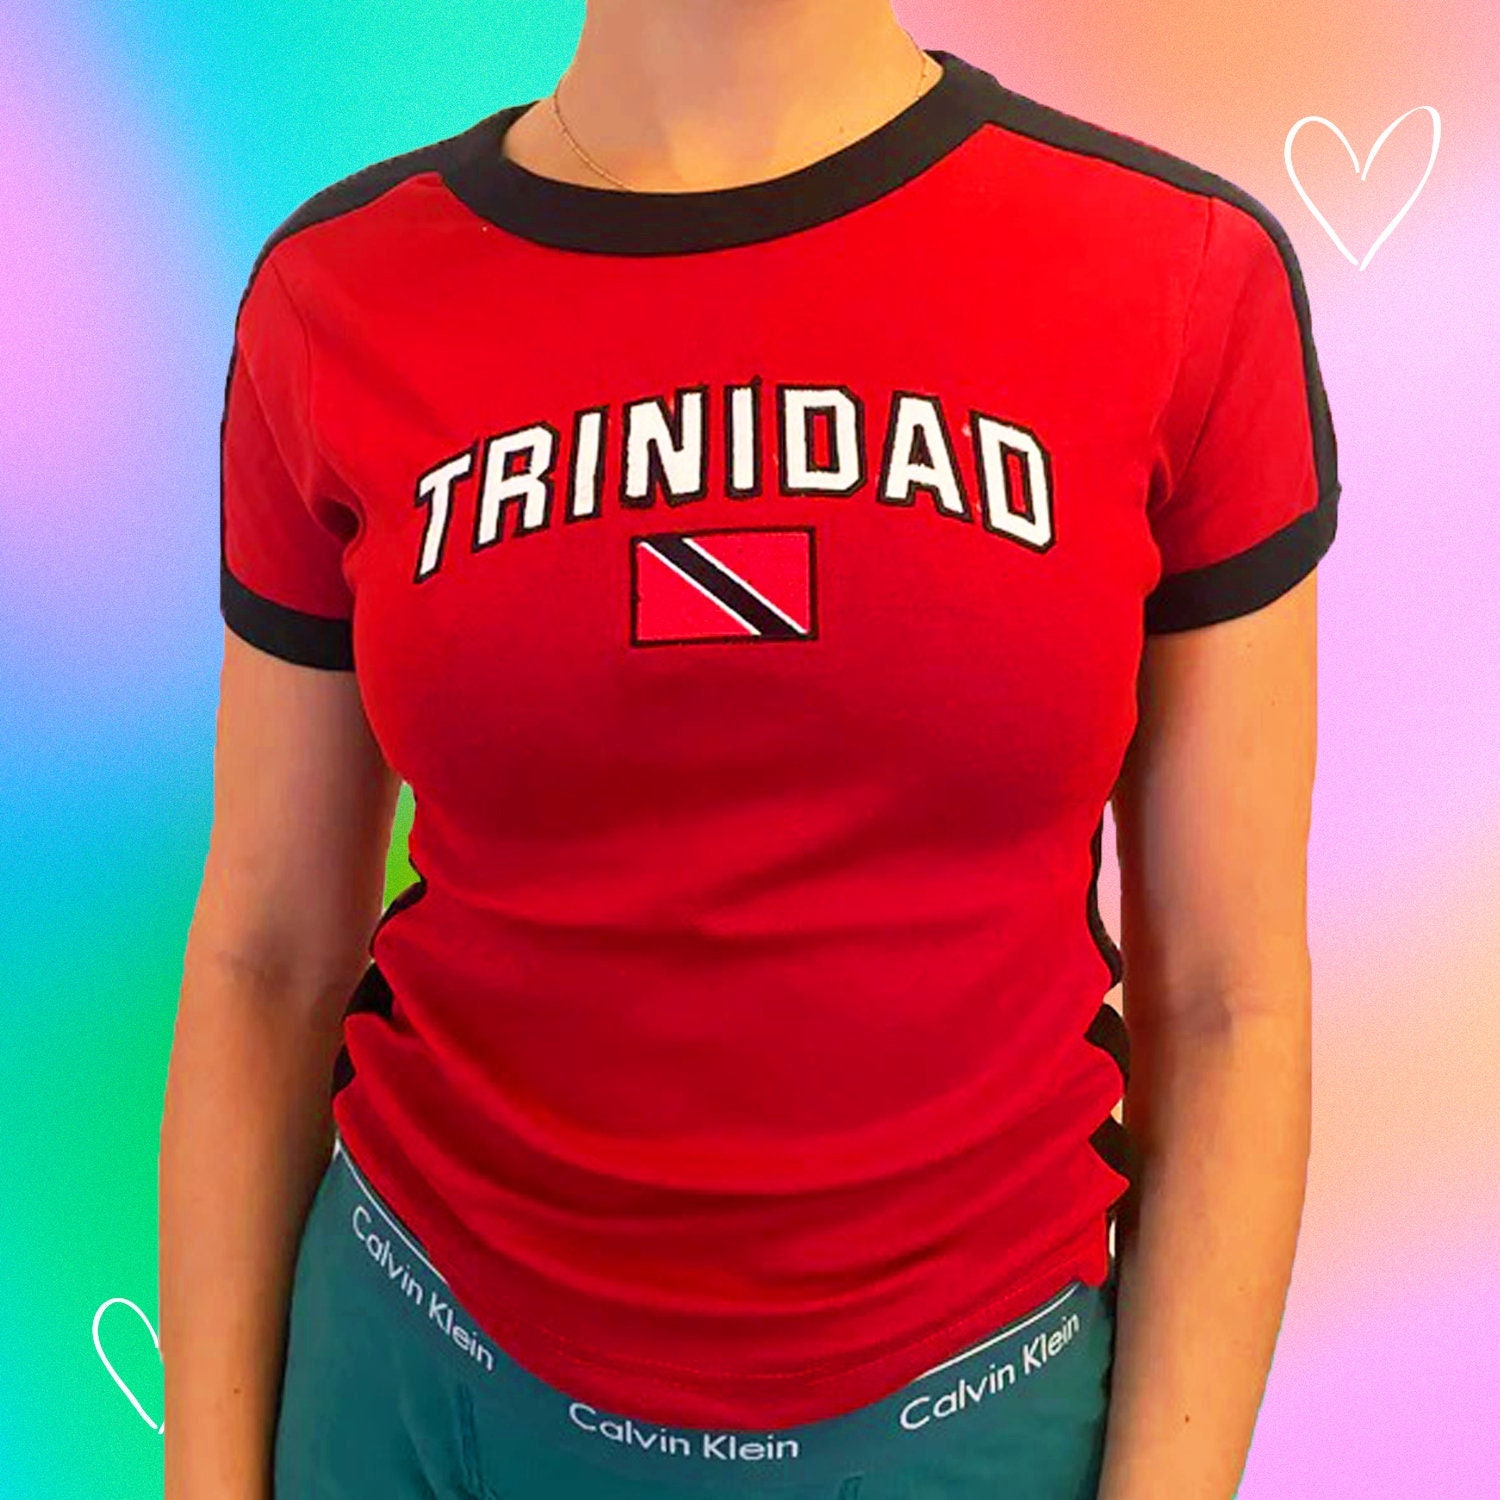 Trinidad Tobago